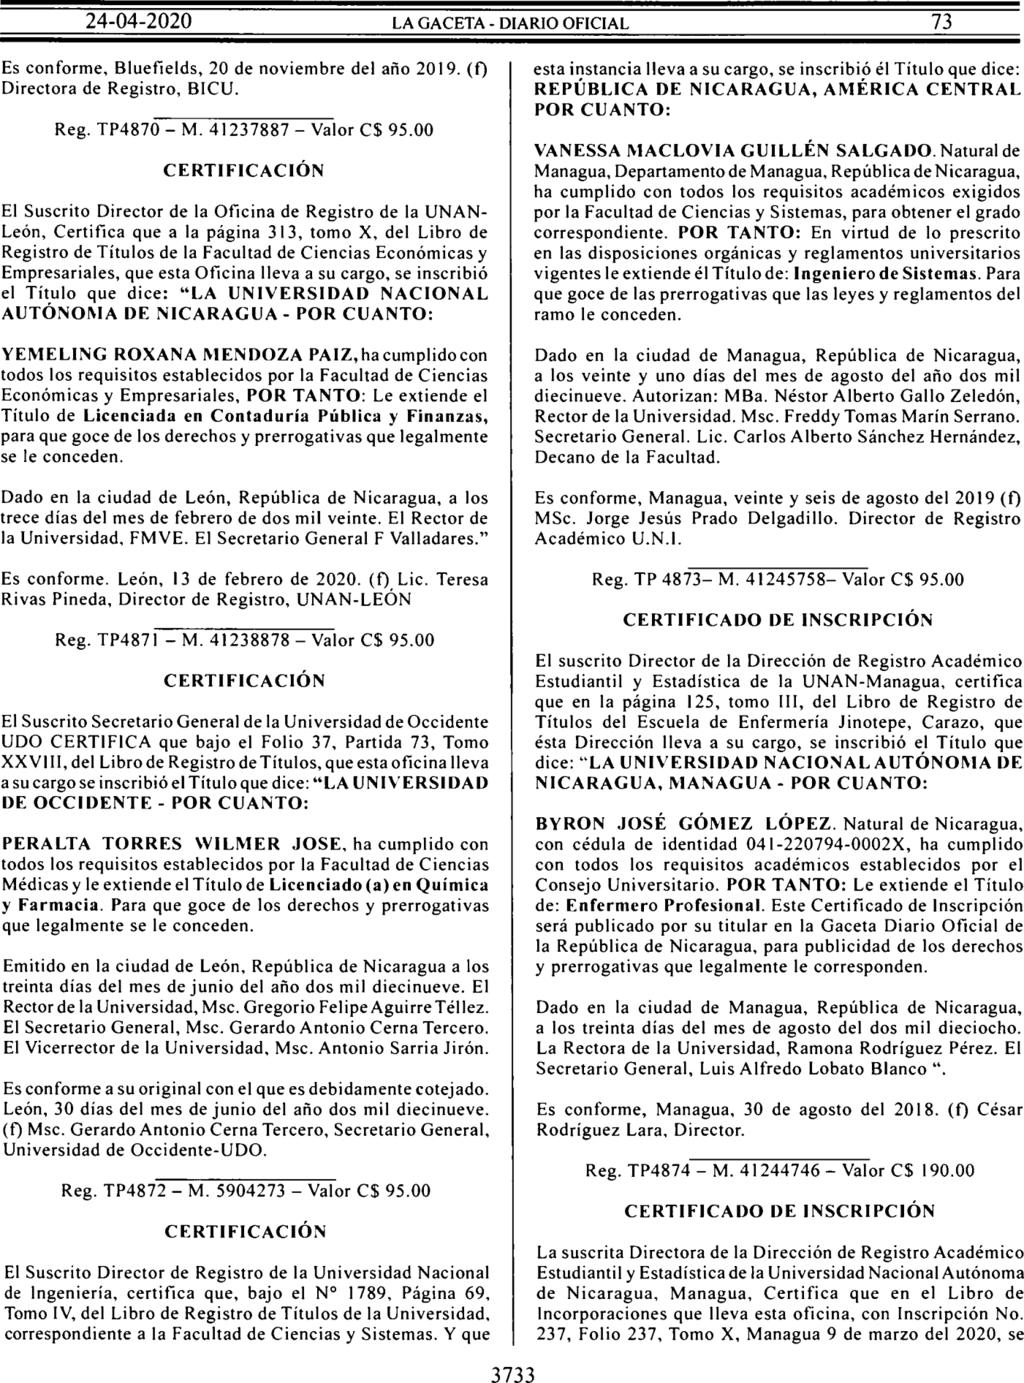 El director de Registro y Control Académico de la Universidad del Norte de Nicaragua (UNN) certifica: Que bajo la Página N 197, Asiento N 903, Tomo 1, del Libro de Registro de Títulos de Graduados